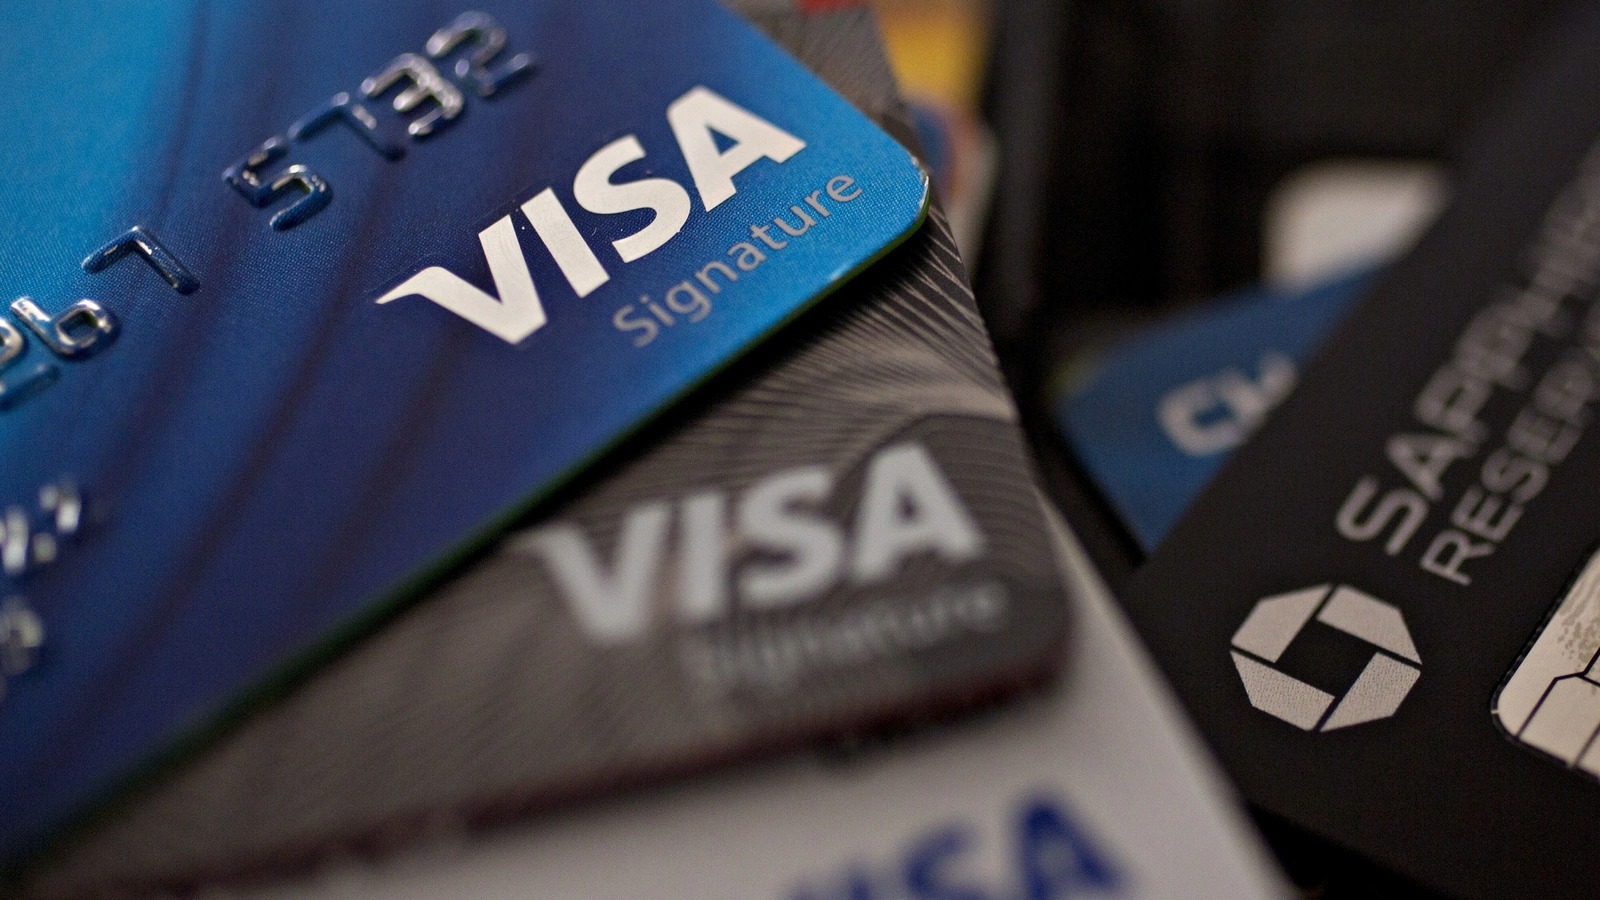 Visa kripto odaklı bir danışmanlık uygulaması başlatıyor